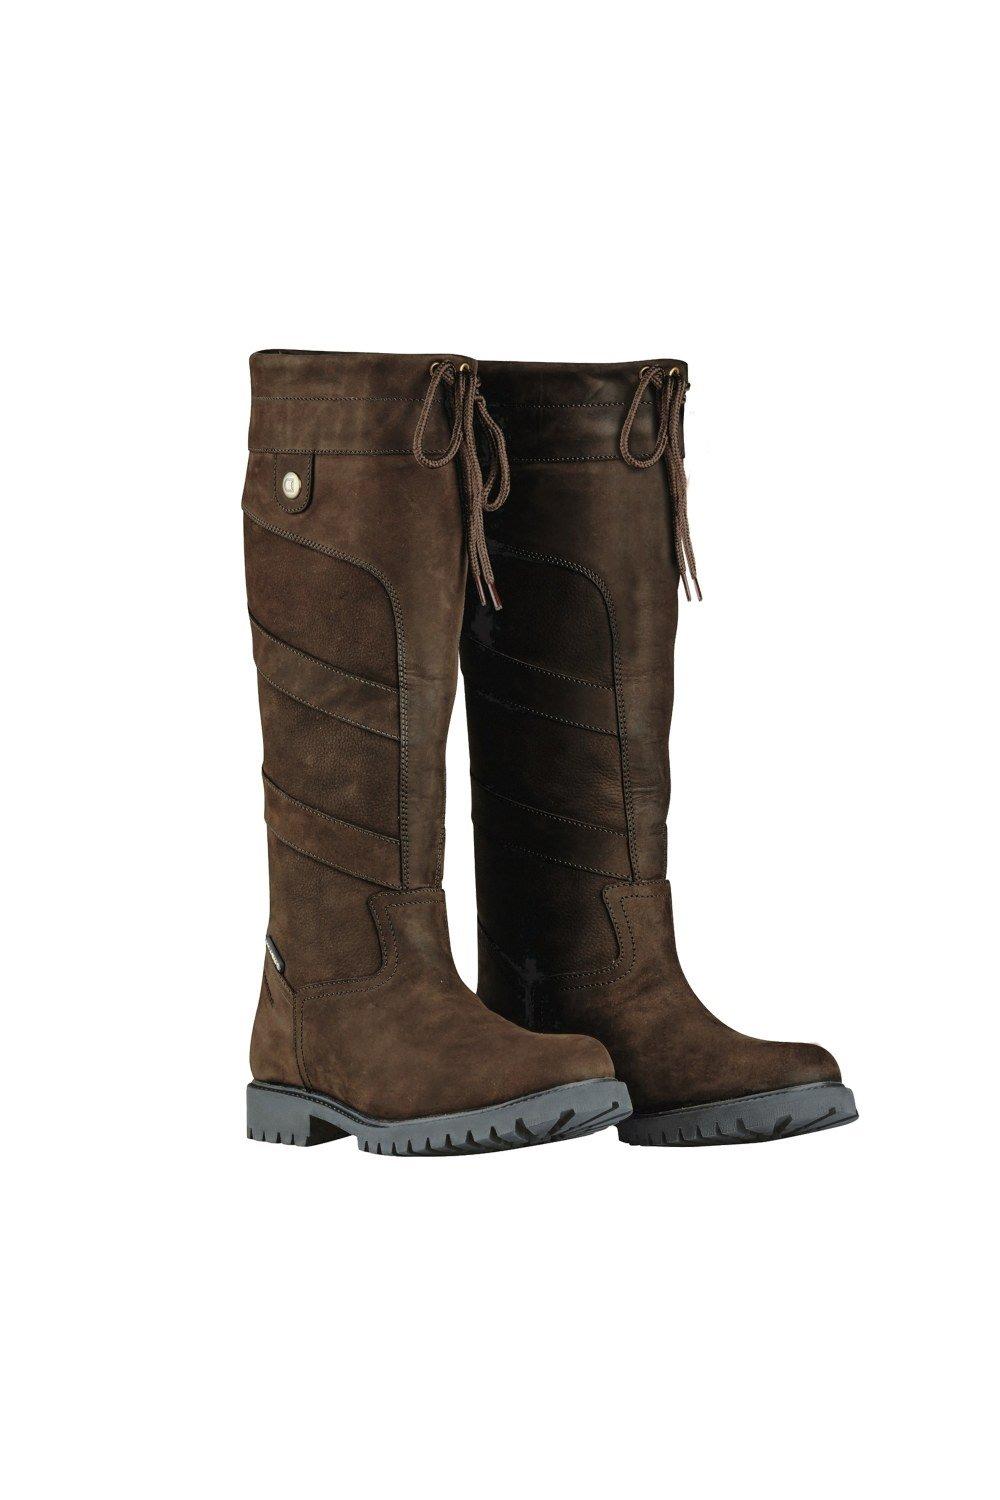 Кожаные ботинки Кеннет Dublin, коричневый кожаные фундаментные ботинки джодхпур dublin коричневый